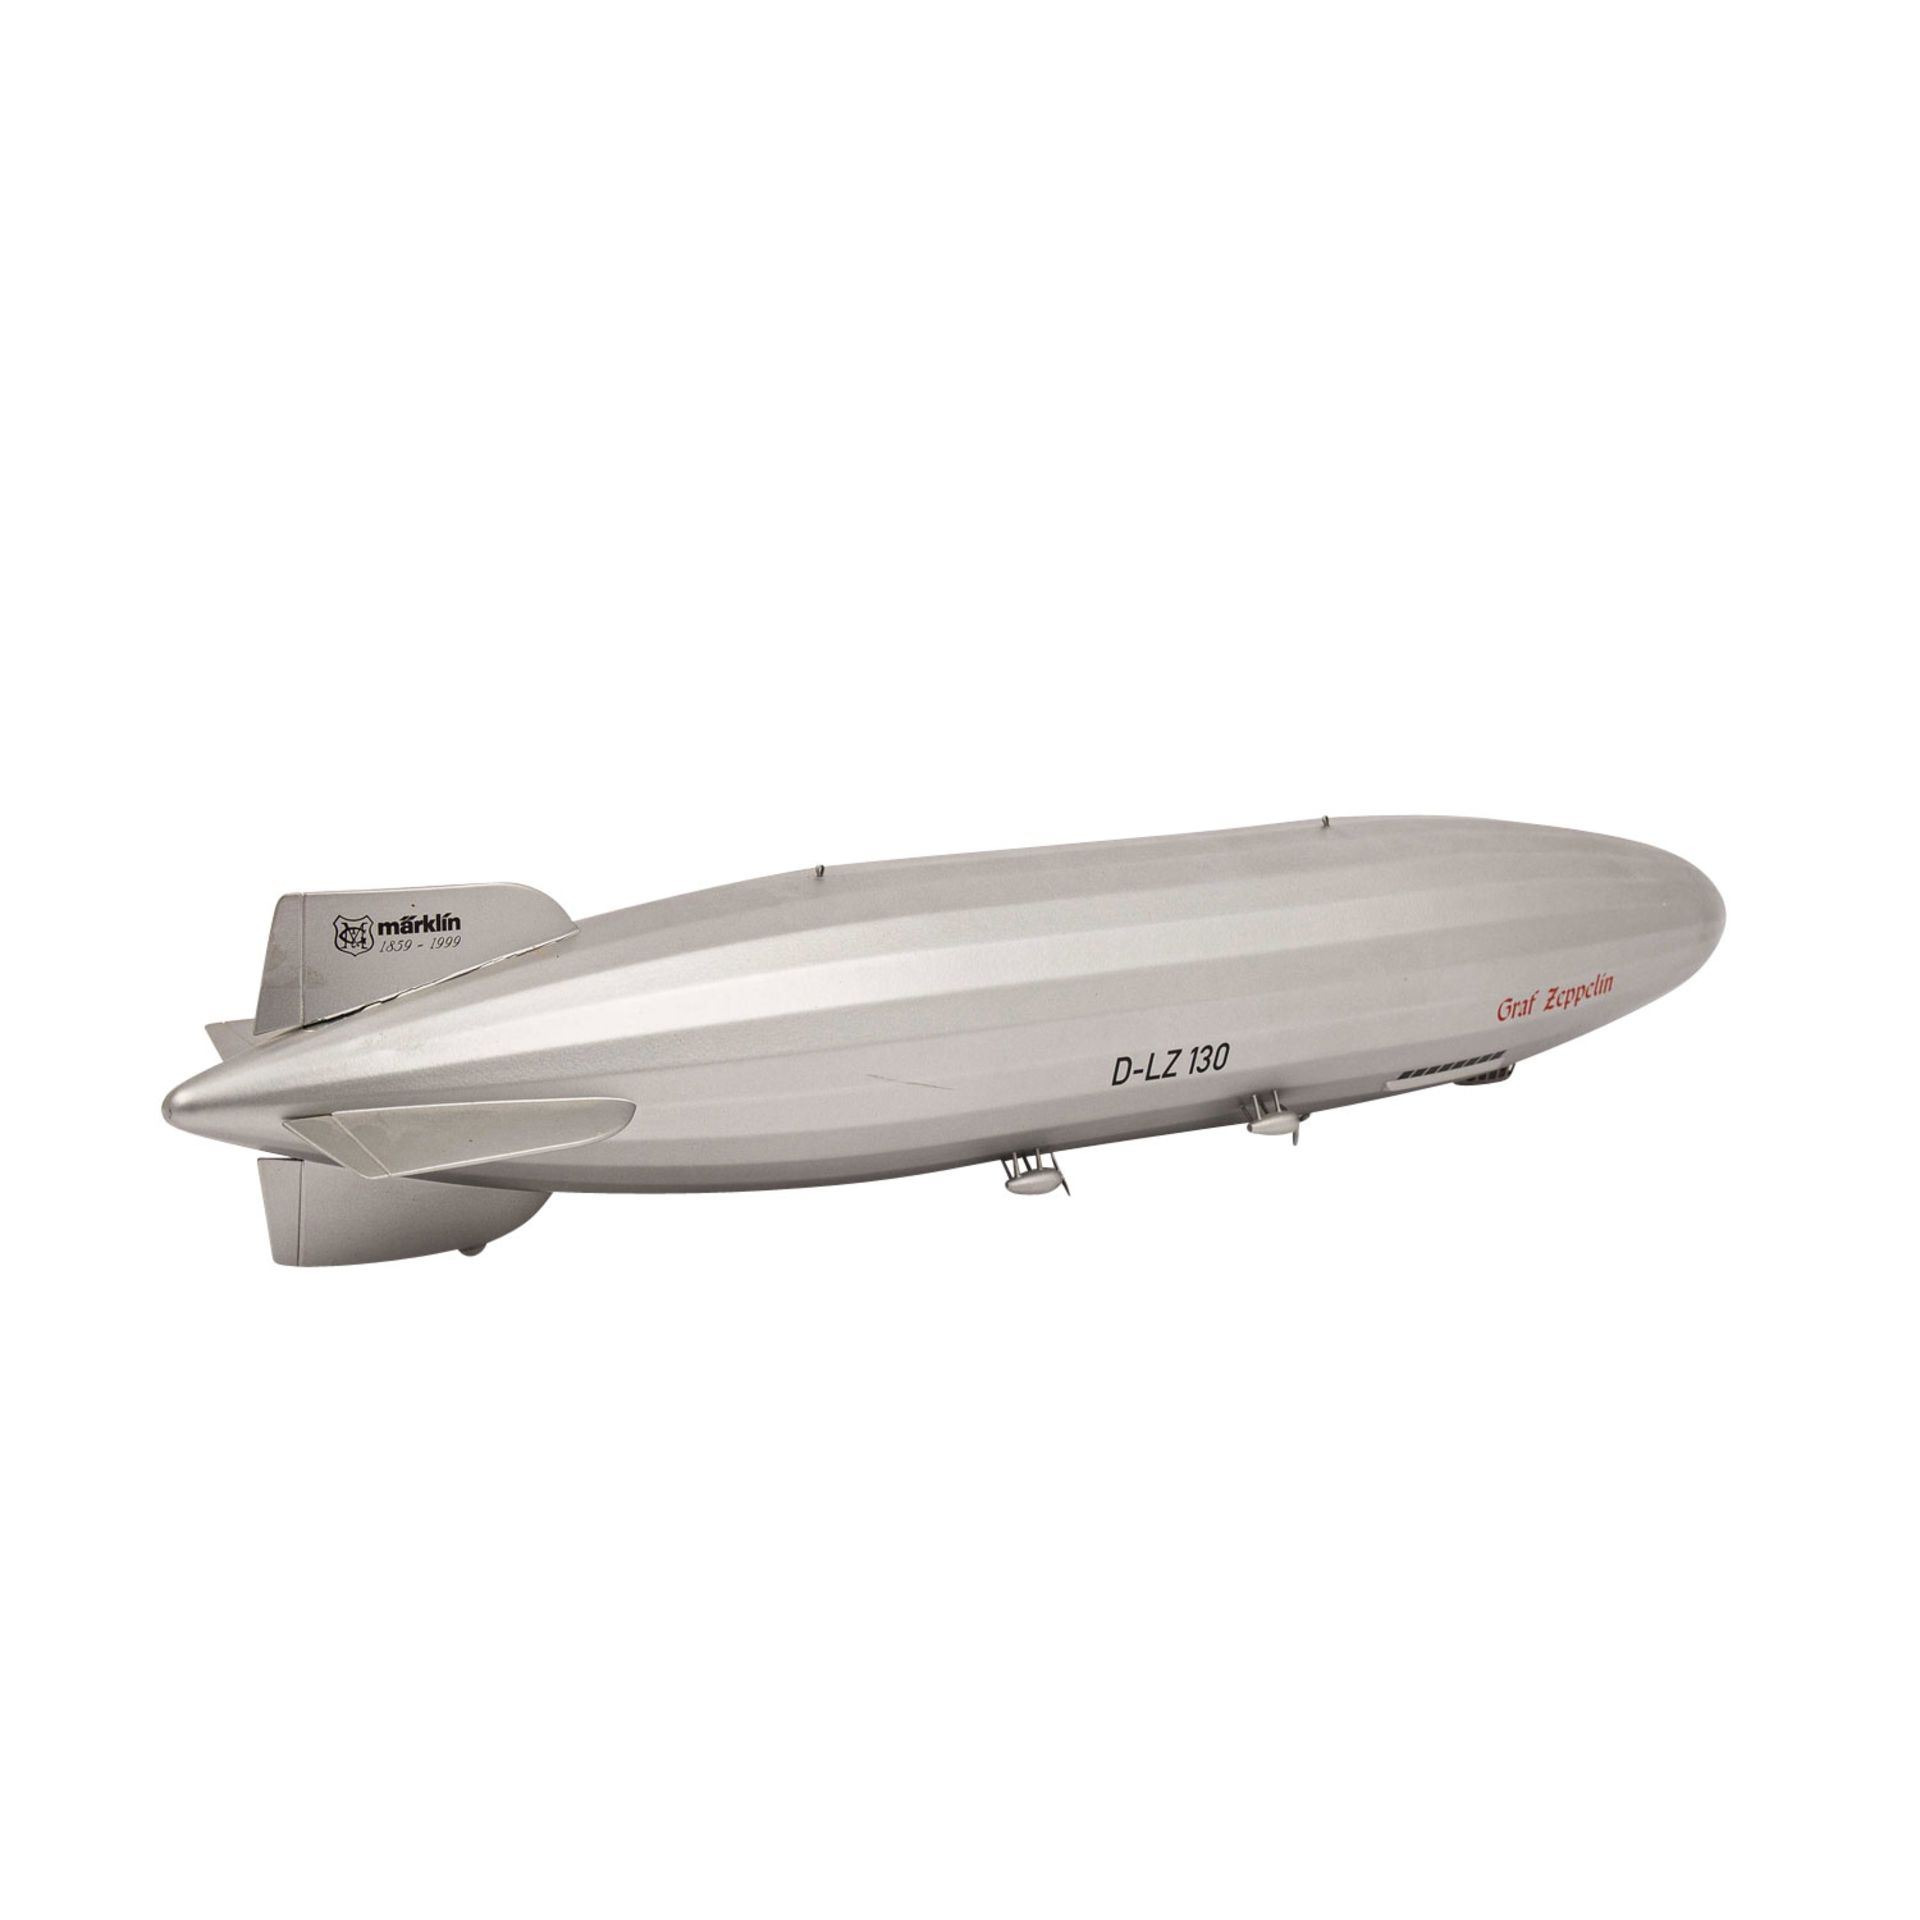 MÄRKLIN Luftschiff "Graf Zeppelin" 11400, einmalige Sonderserie für die MHI von 1999, - Image 3 of 3